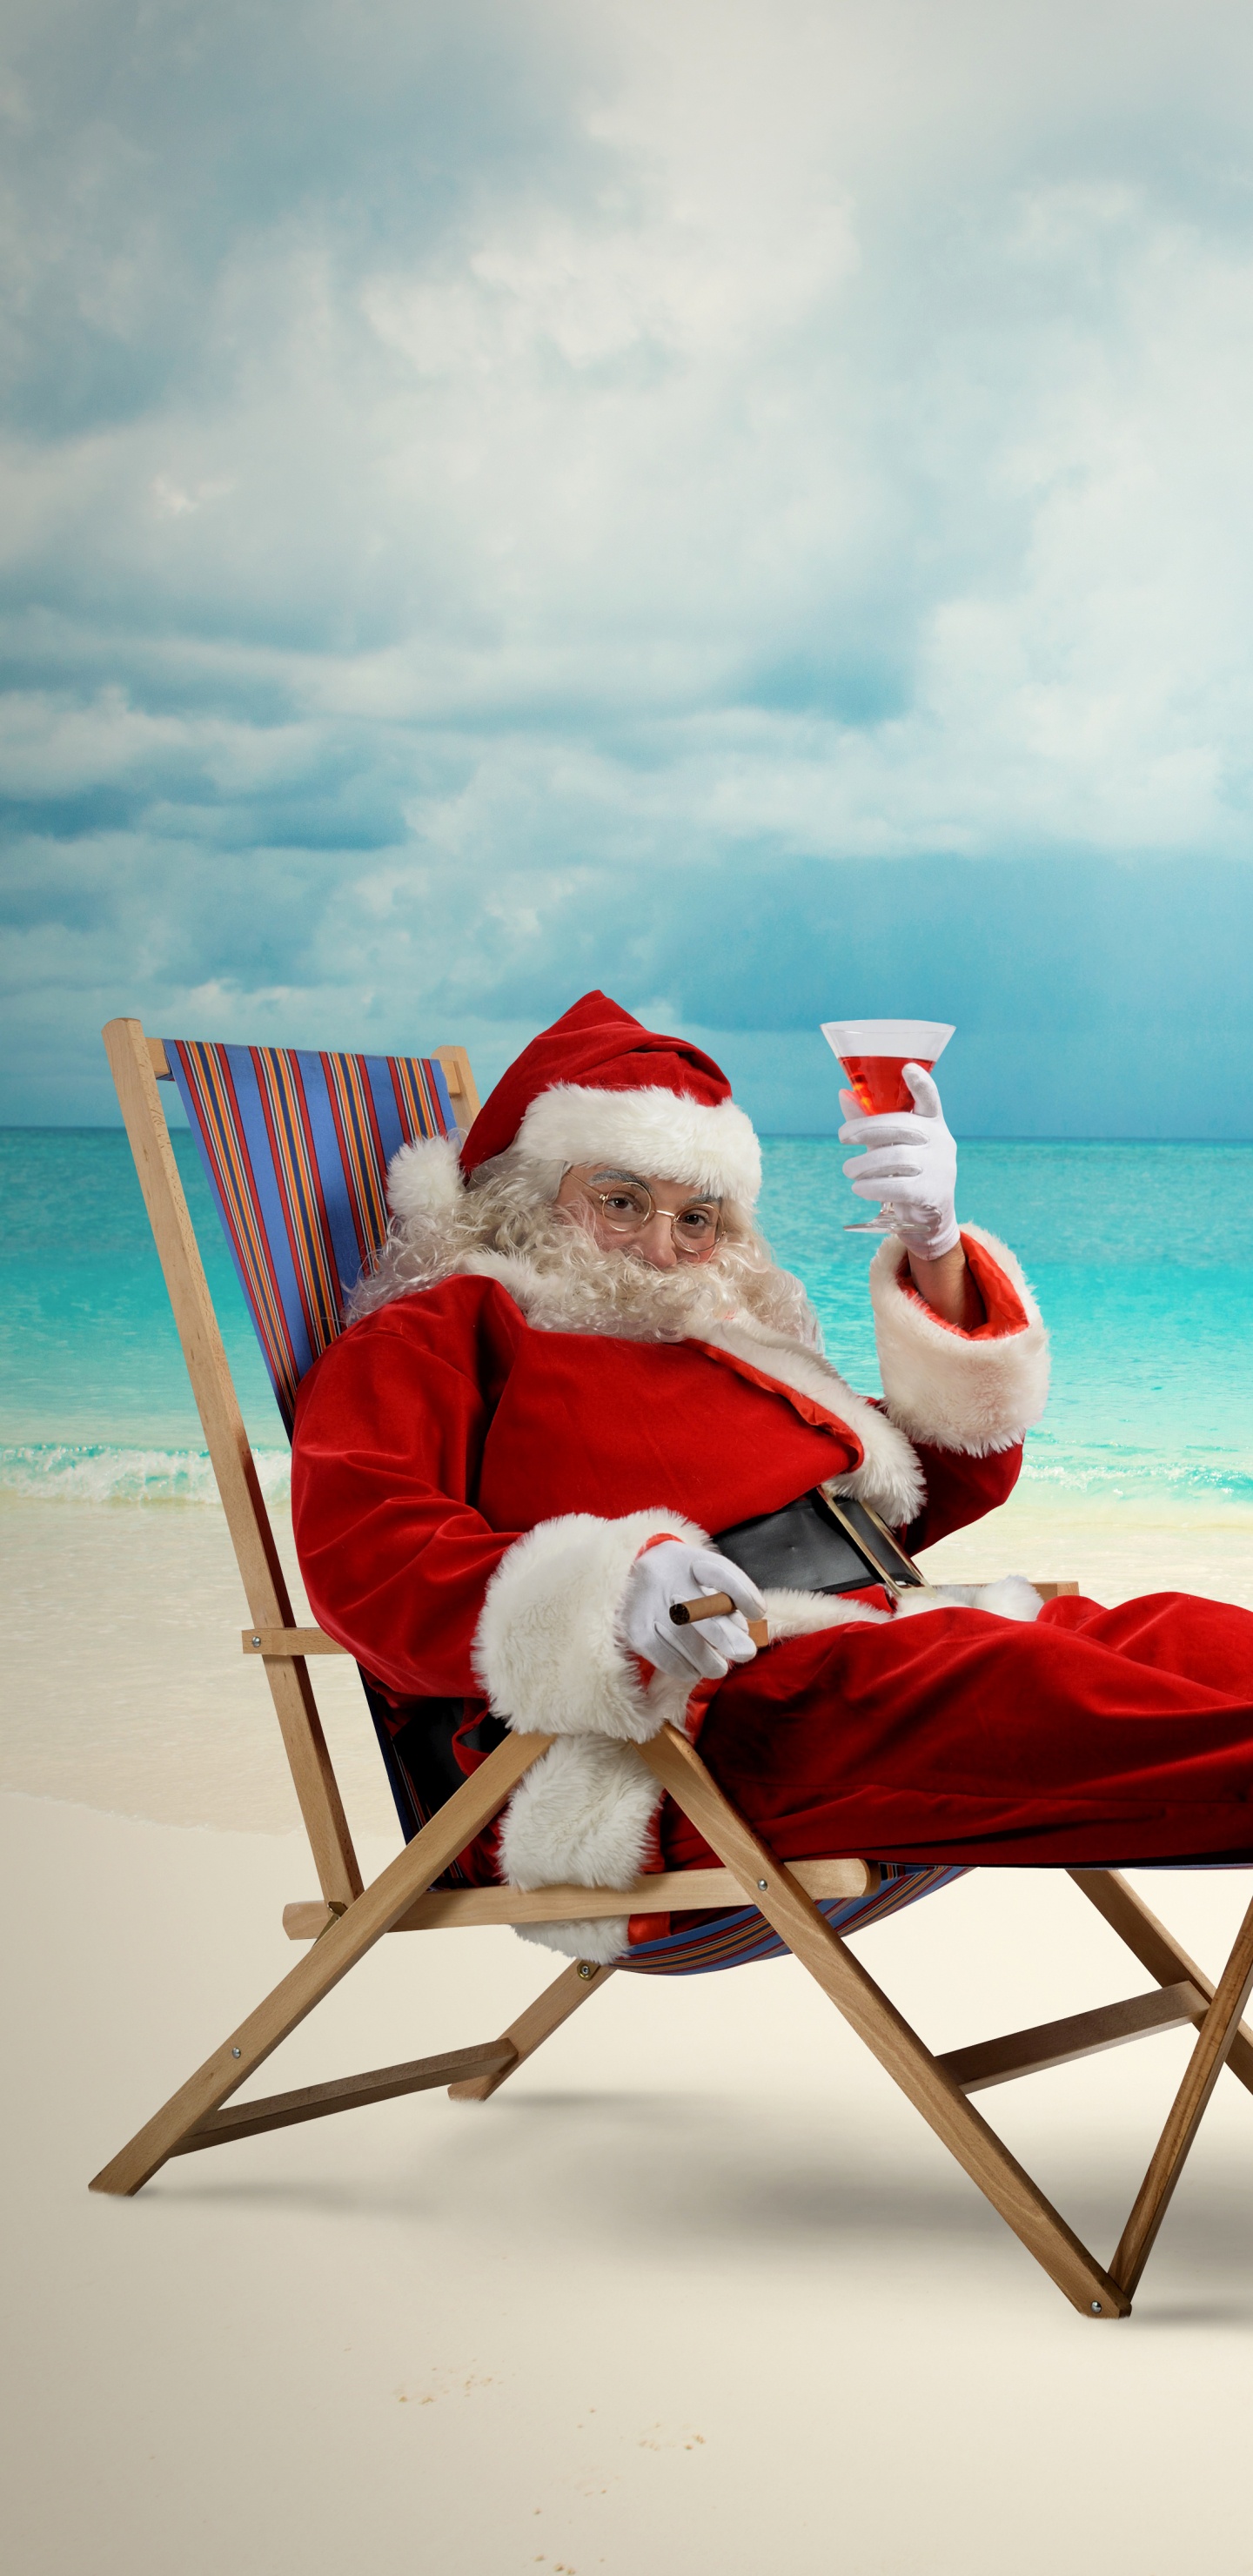 圣诞老人, 圣诞节那天, 大海, 度假, 海洋 壁纸 1440x2960 允许